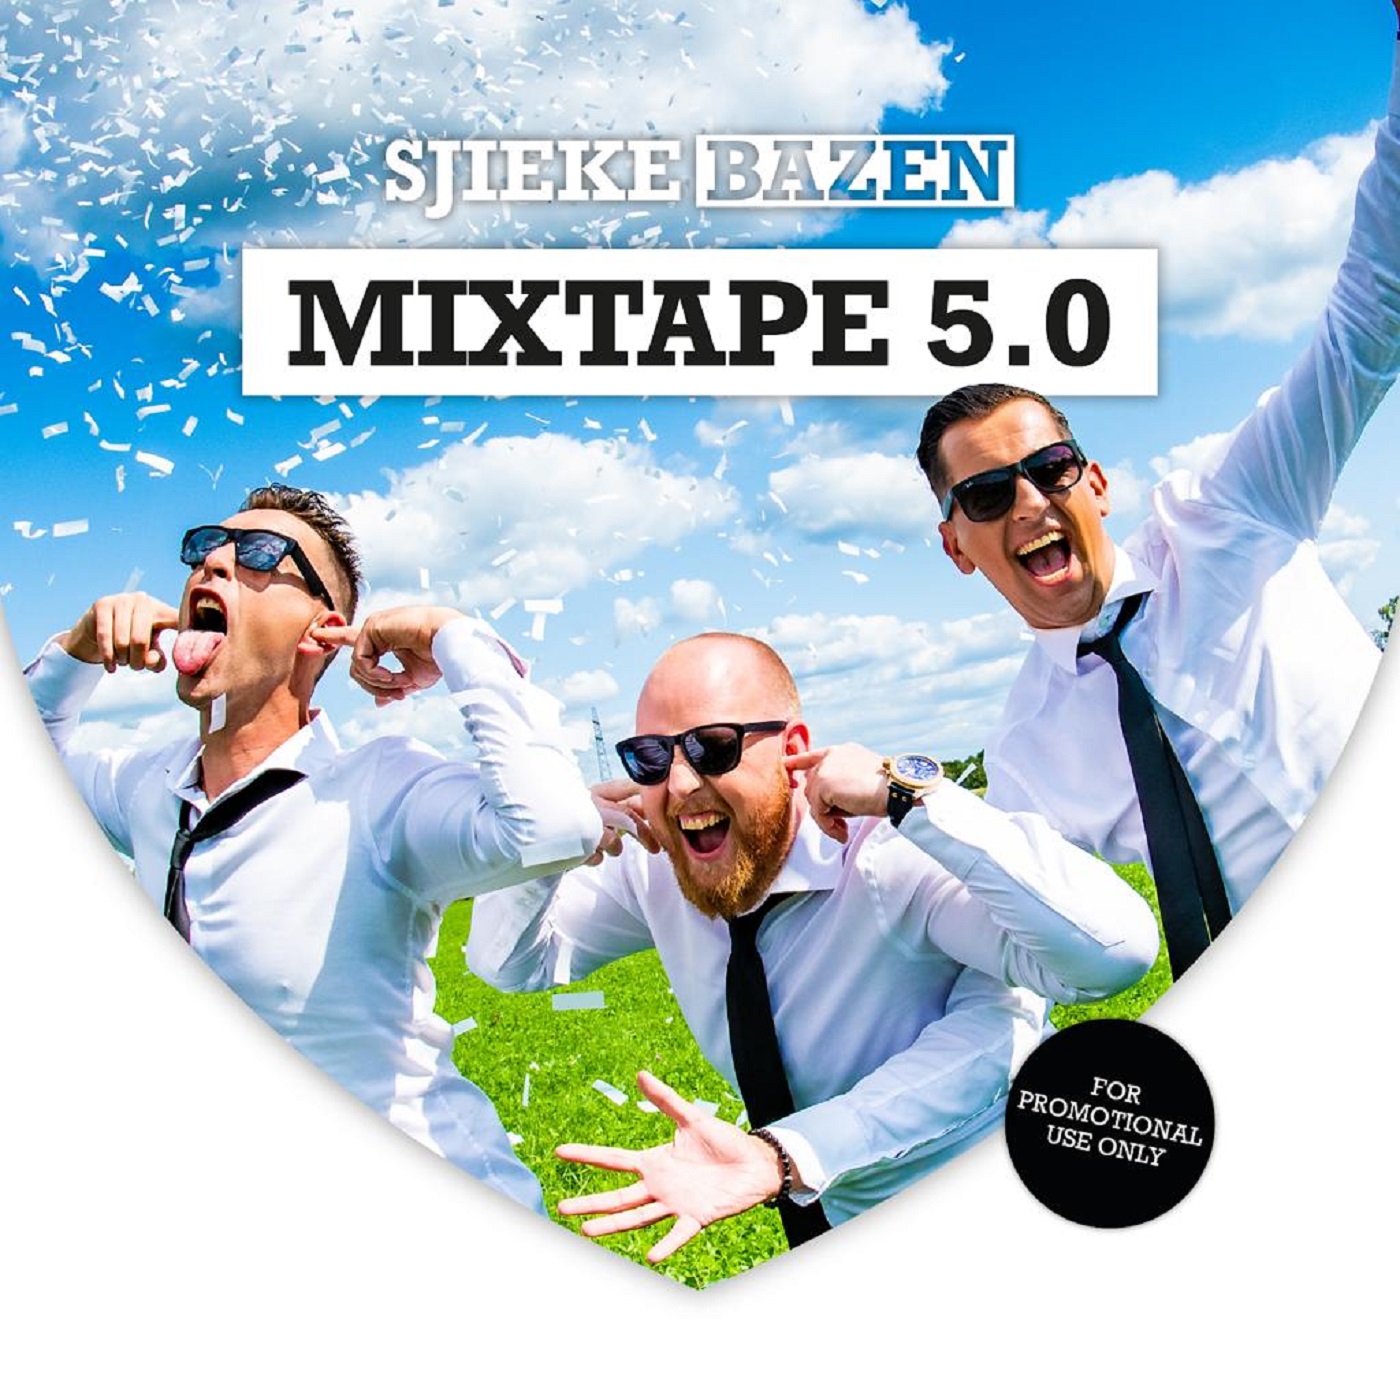 Mixtape 5.0